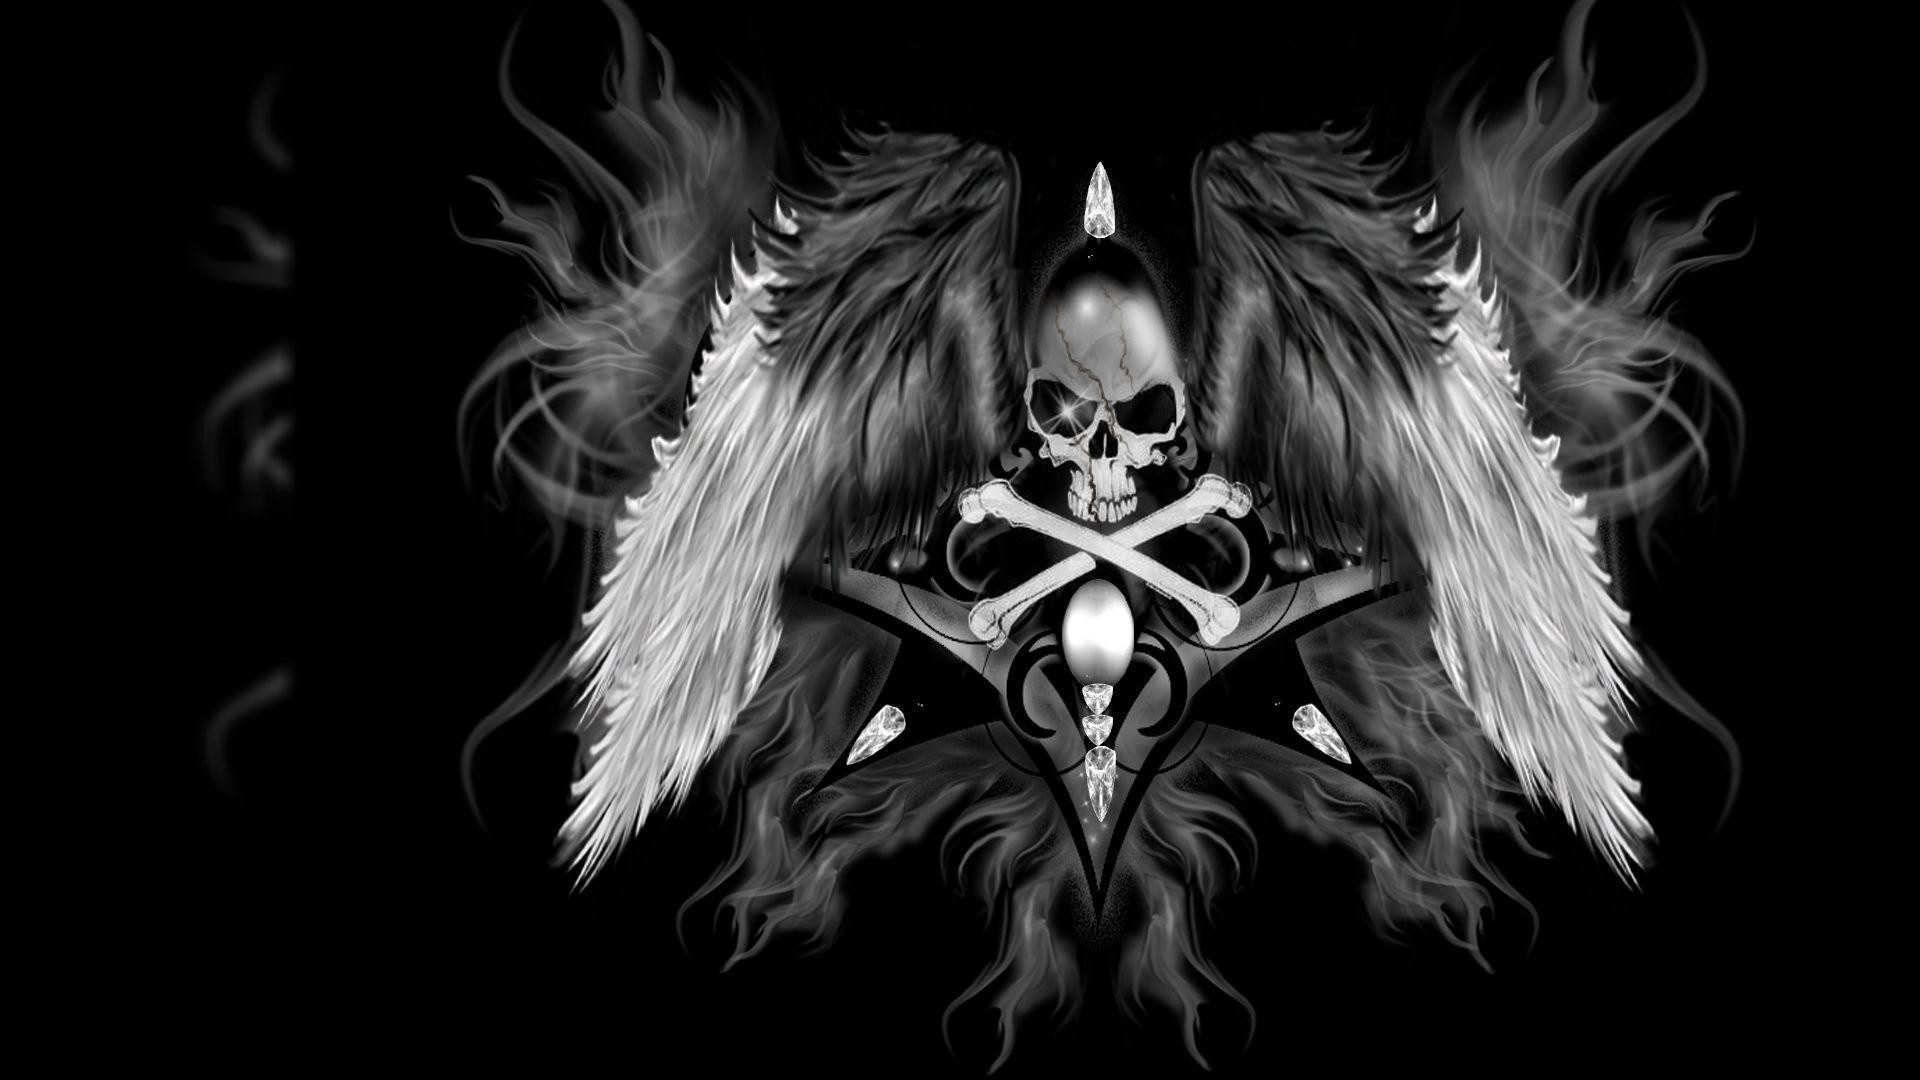 검은 해골 벽지,어둠,날개,삽화,소설 속의 인물,악마